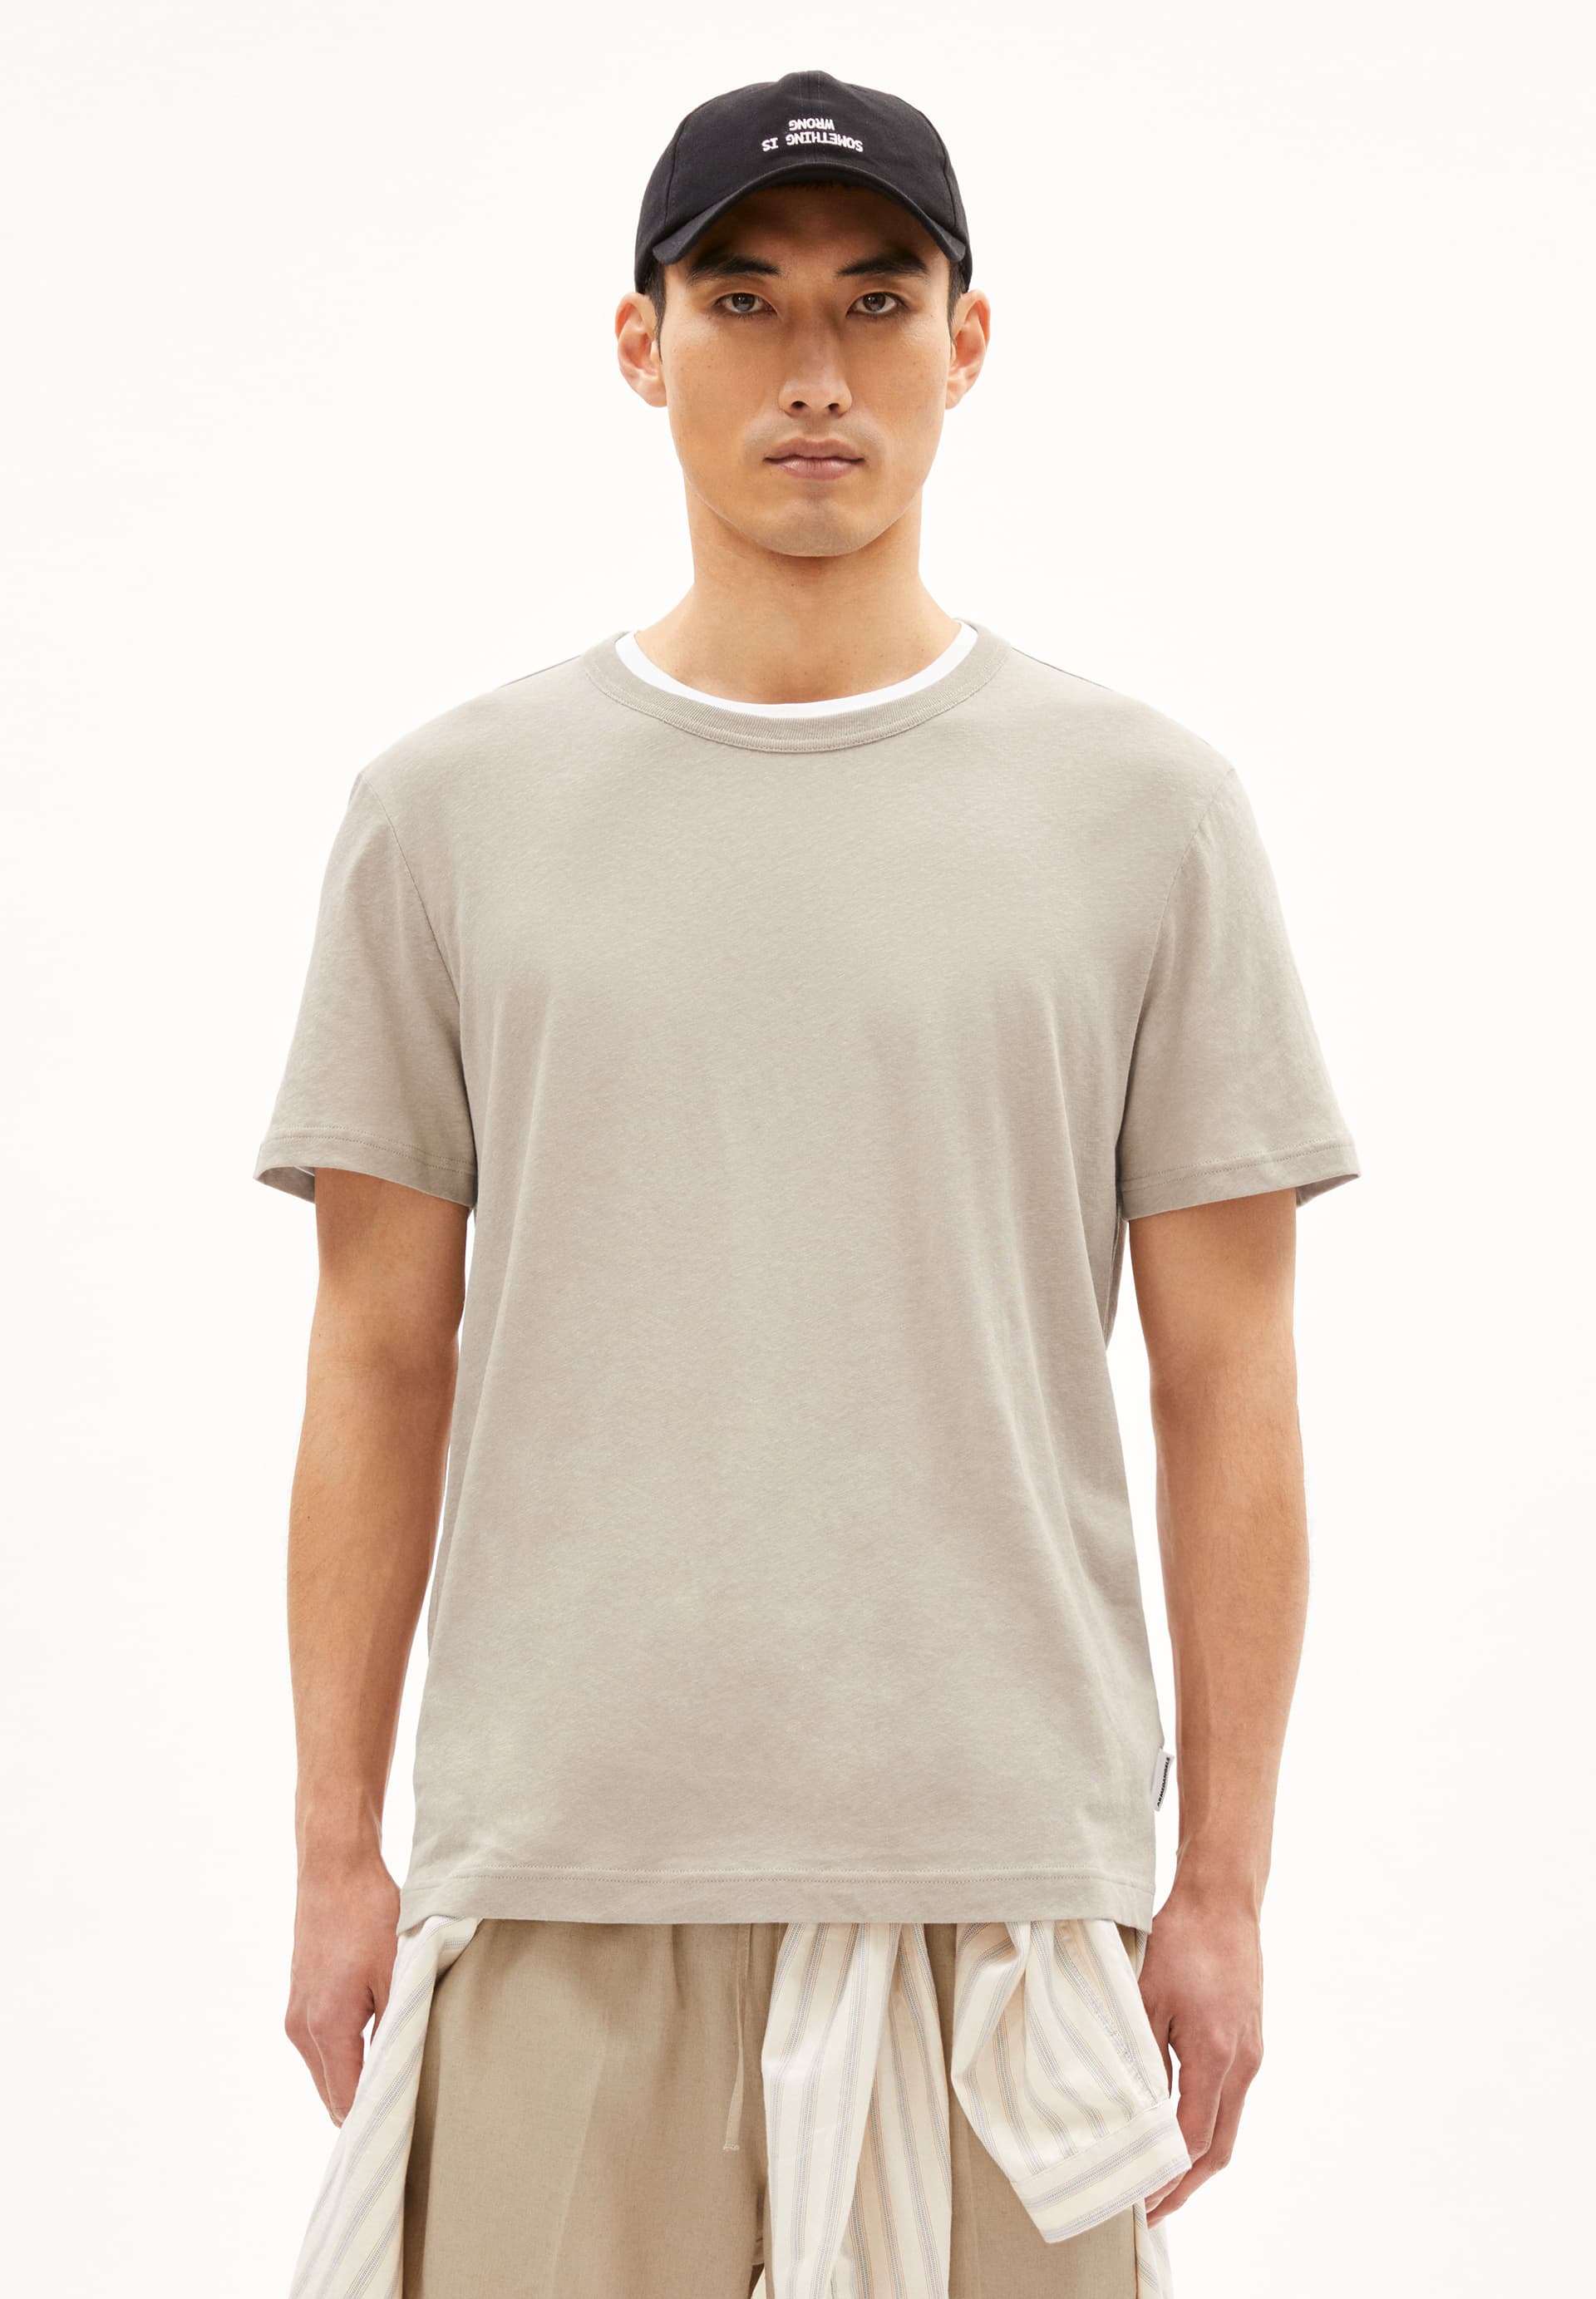 KOLMAARO LINEN T-Shirt Relaxed Fit made of Linen-Mix